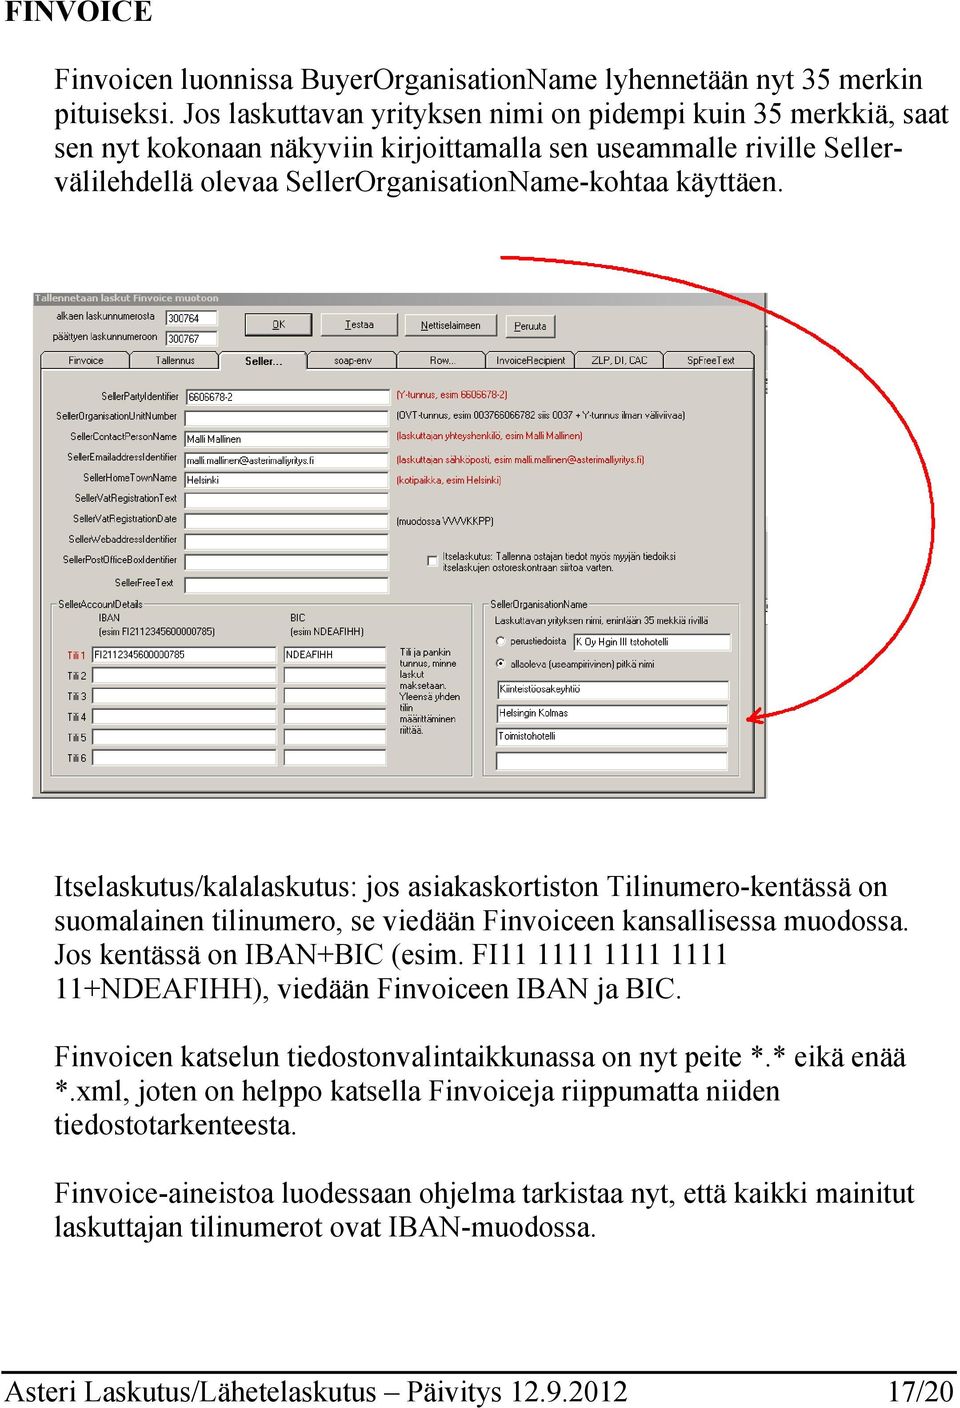 Itselaskutus/kalalaskutus: jos asiakaskortiston Tilinumero-kentässä on suomalainen tilinumero, se viedään Finvoiceen kansallisessa muodossa. Jos kentässä on IBAN+BIC (esim.